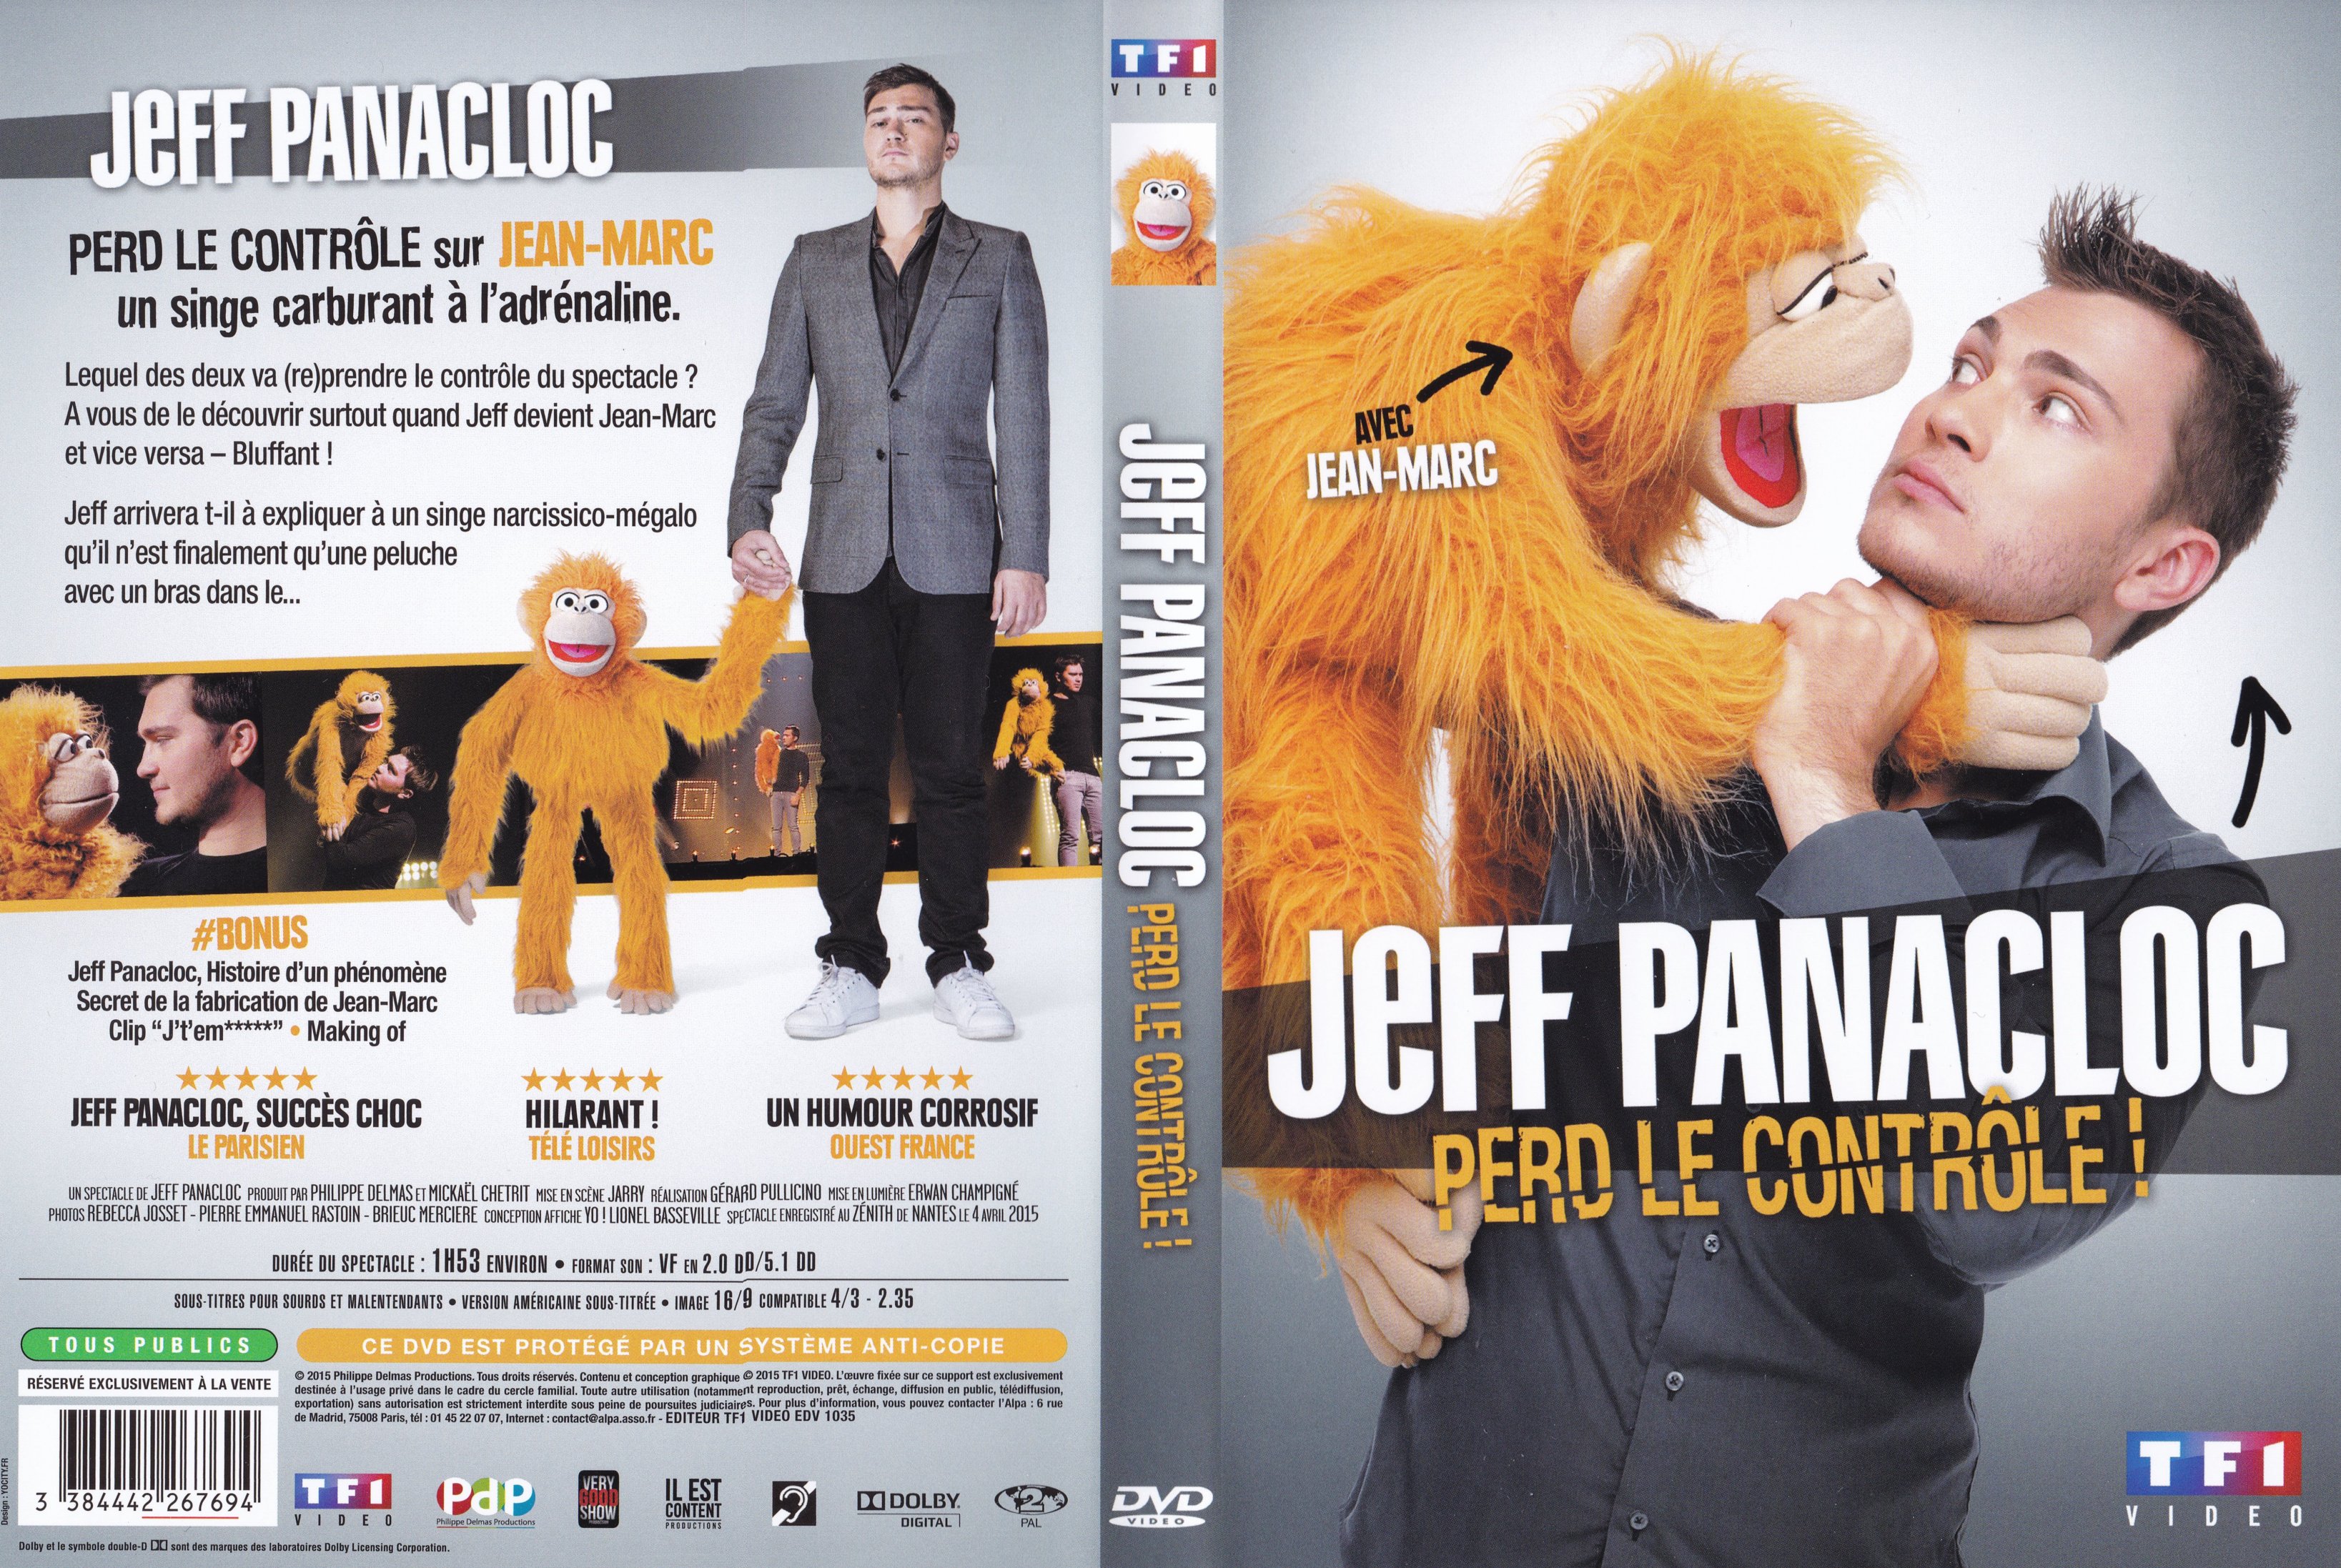 Jaquette DVD Jeff Panacloc perd le controle